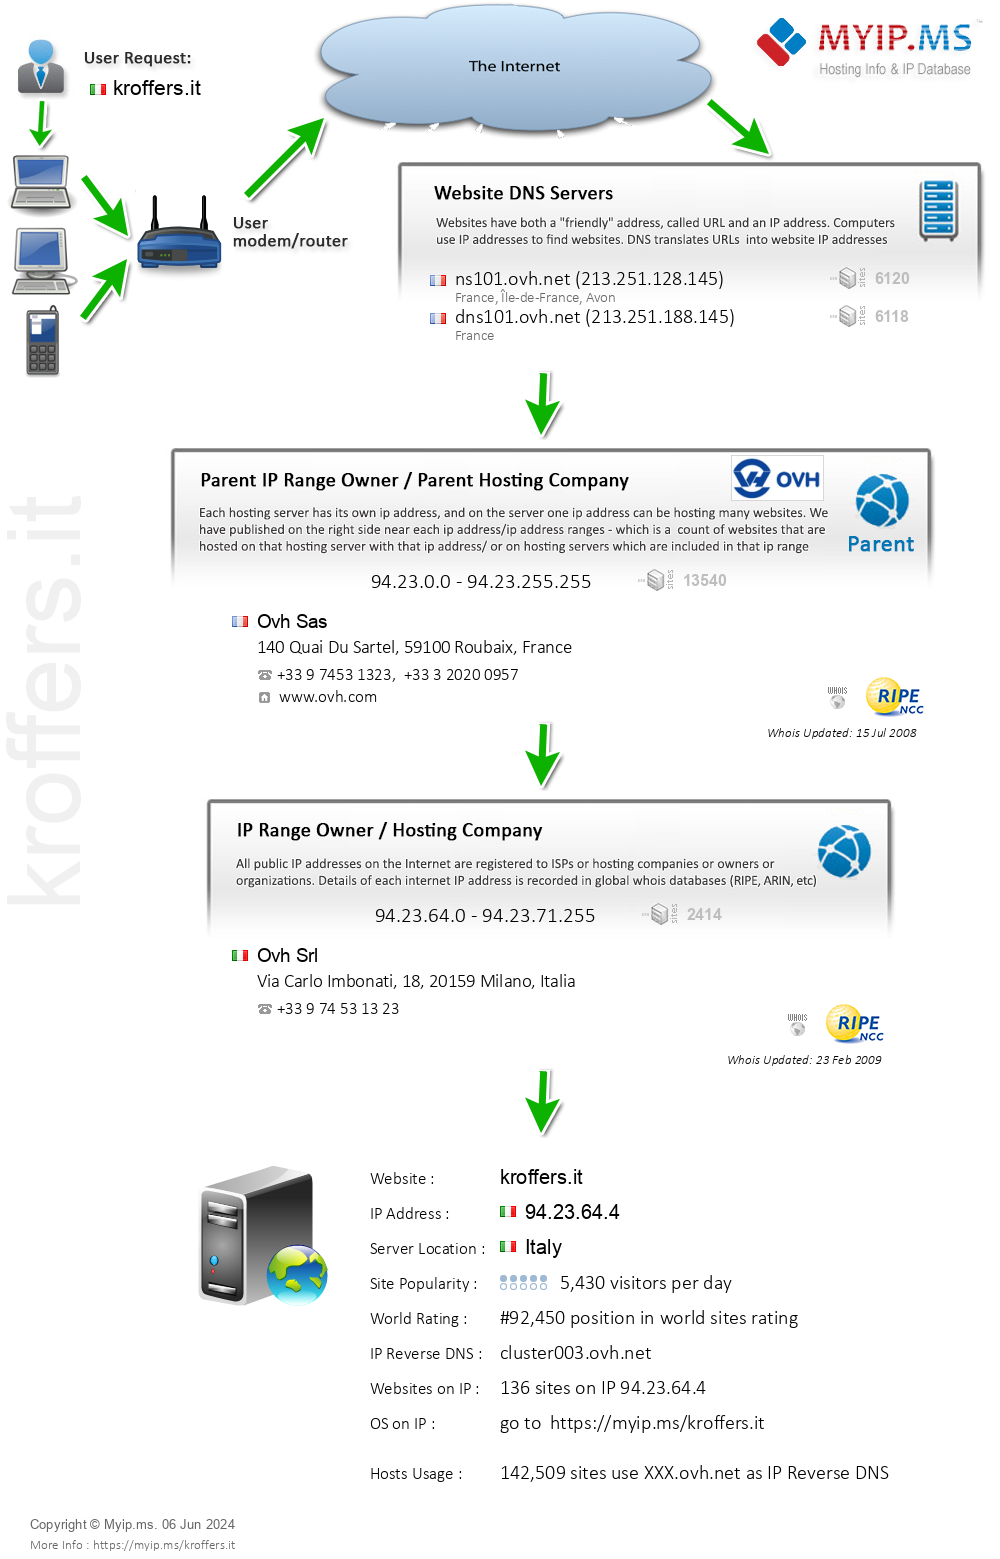 Kroffers.it - Website Hosting Visual IP Diagram